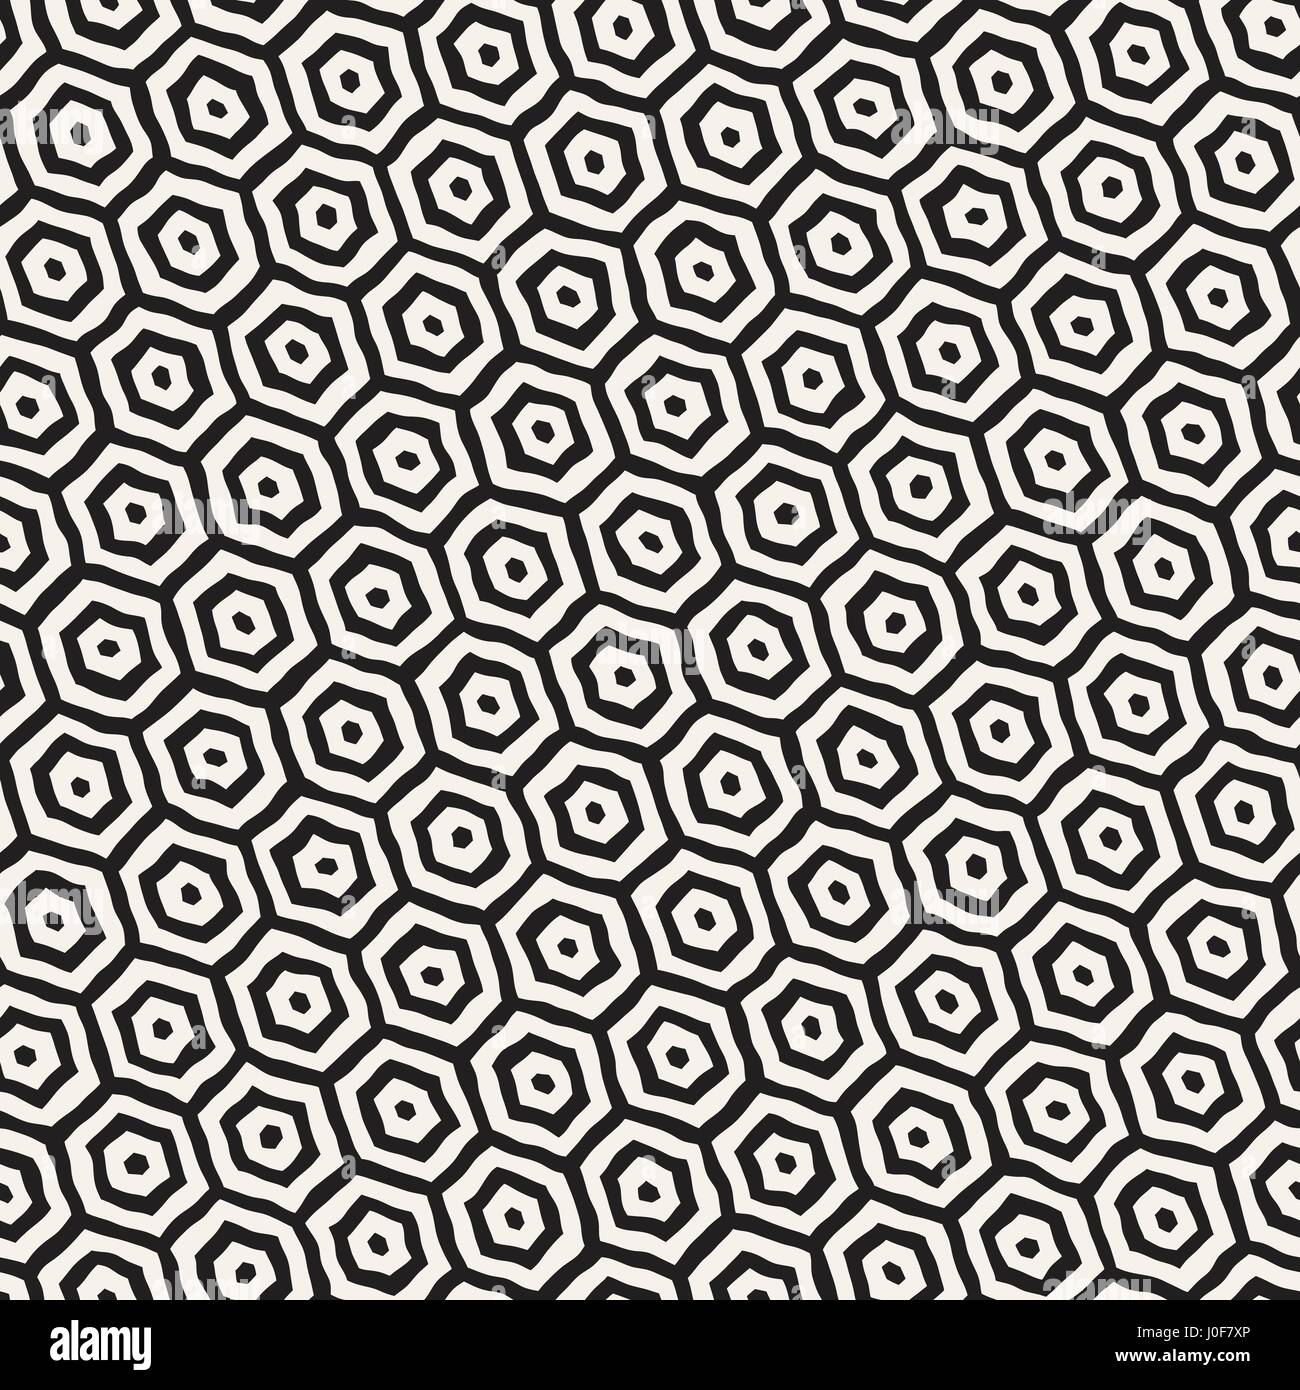 Un motif en noir et blanc avec treillis hexagonal. Monochrome créatif nid d'arrière-plan. à la main Design élégant pinceau abstrait Illustration de Vecteur